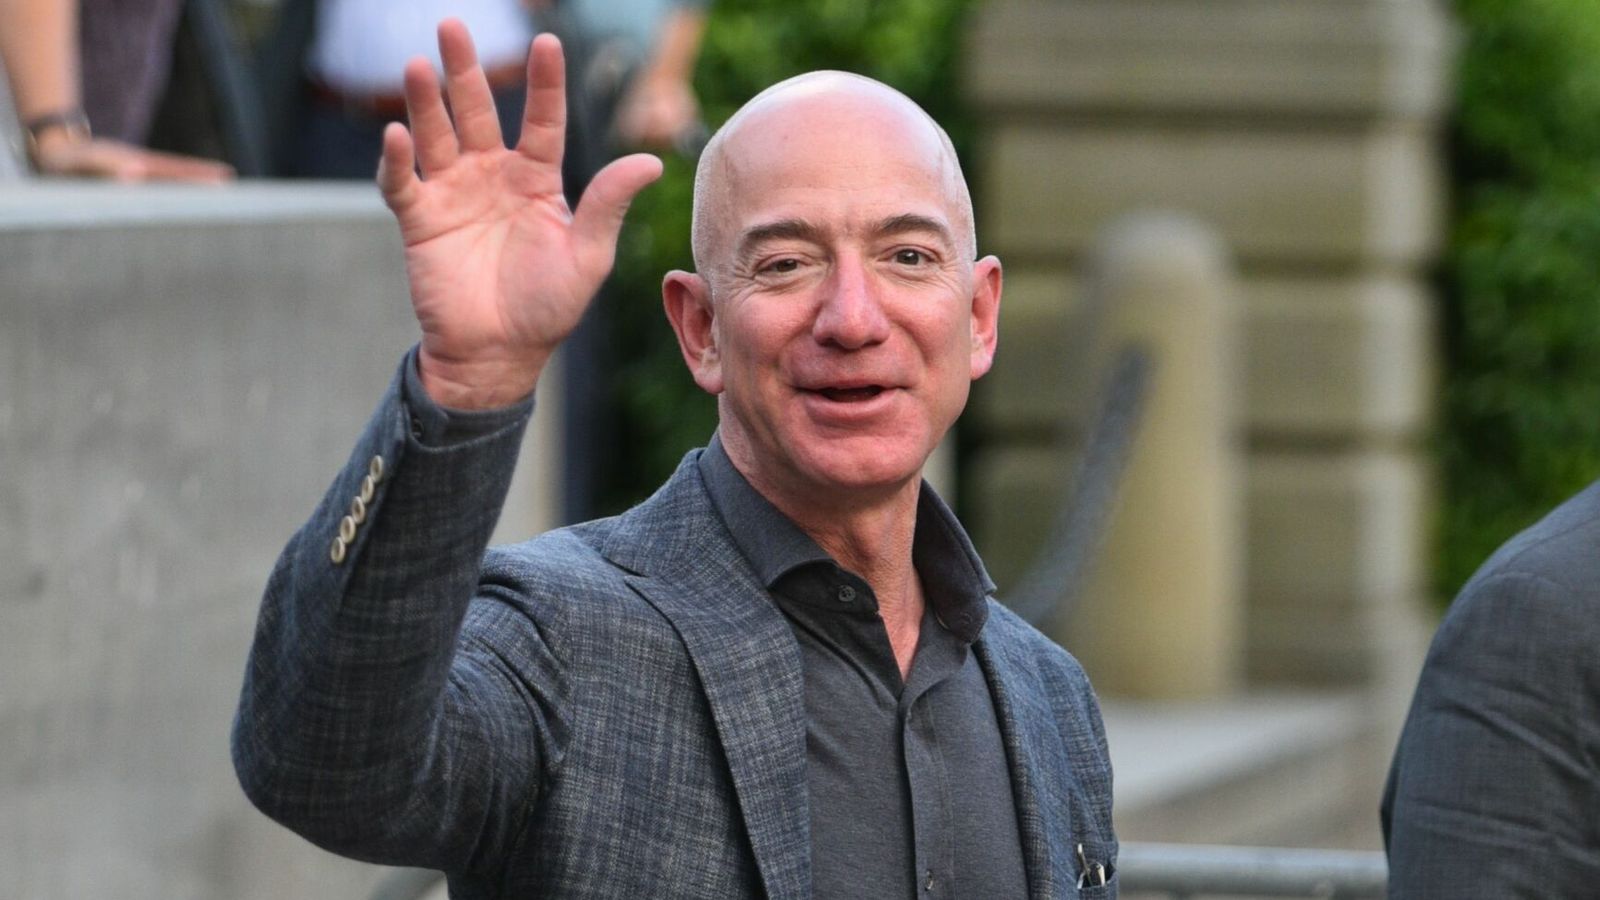 Tại sao Jeff Bezos lại lên lịch các cuộc họp cần tới chỉ số IQ cao vào 10 giờ sáng? - Ảnh 3.